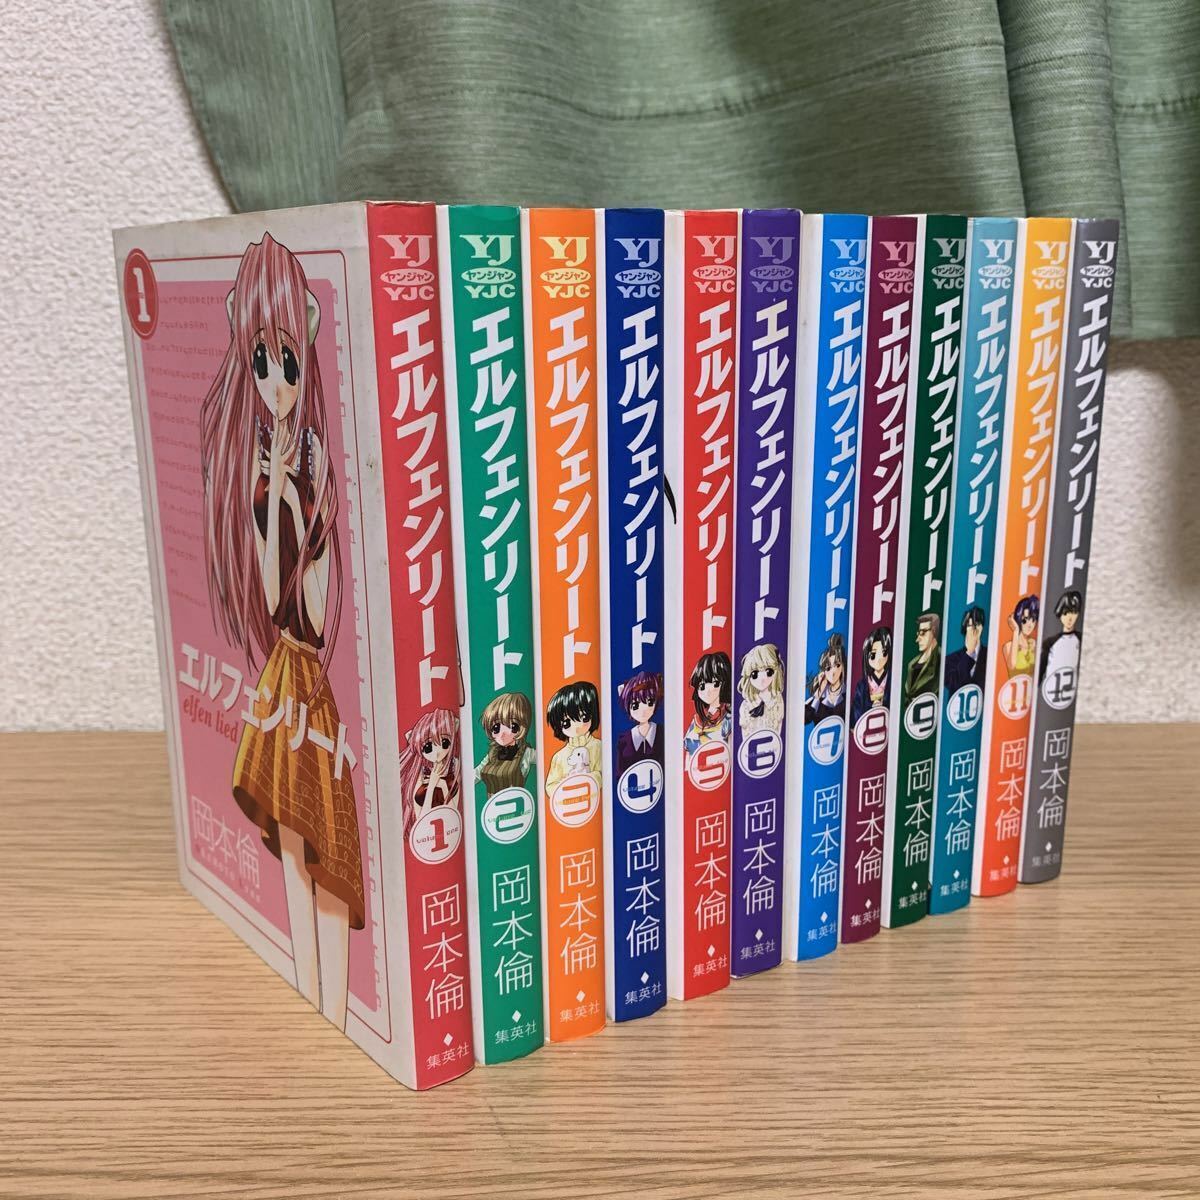 Buy Elfen Lied Lynn Okamoto [Volume 1-12 Manga Complete Set